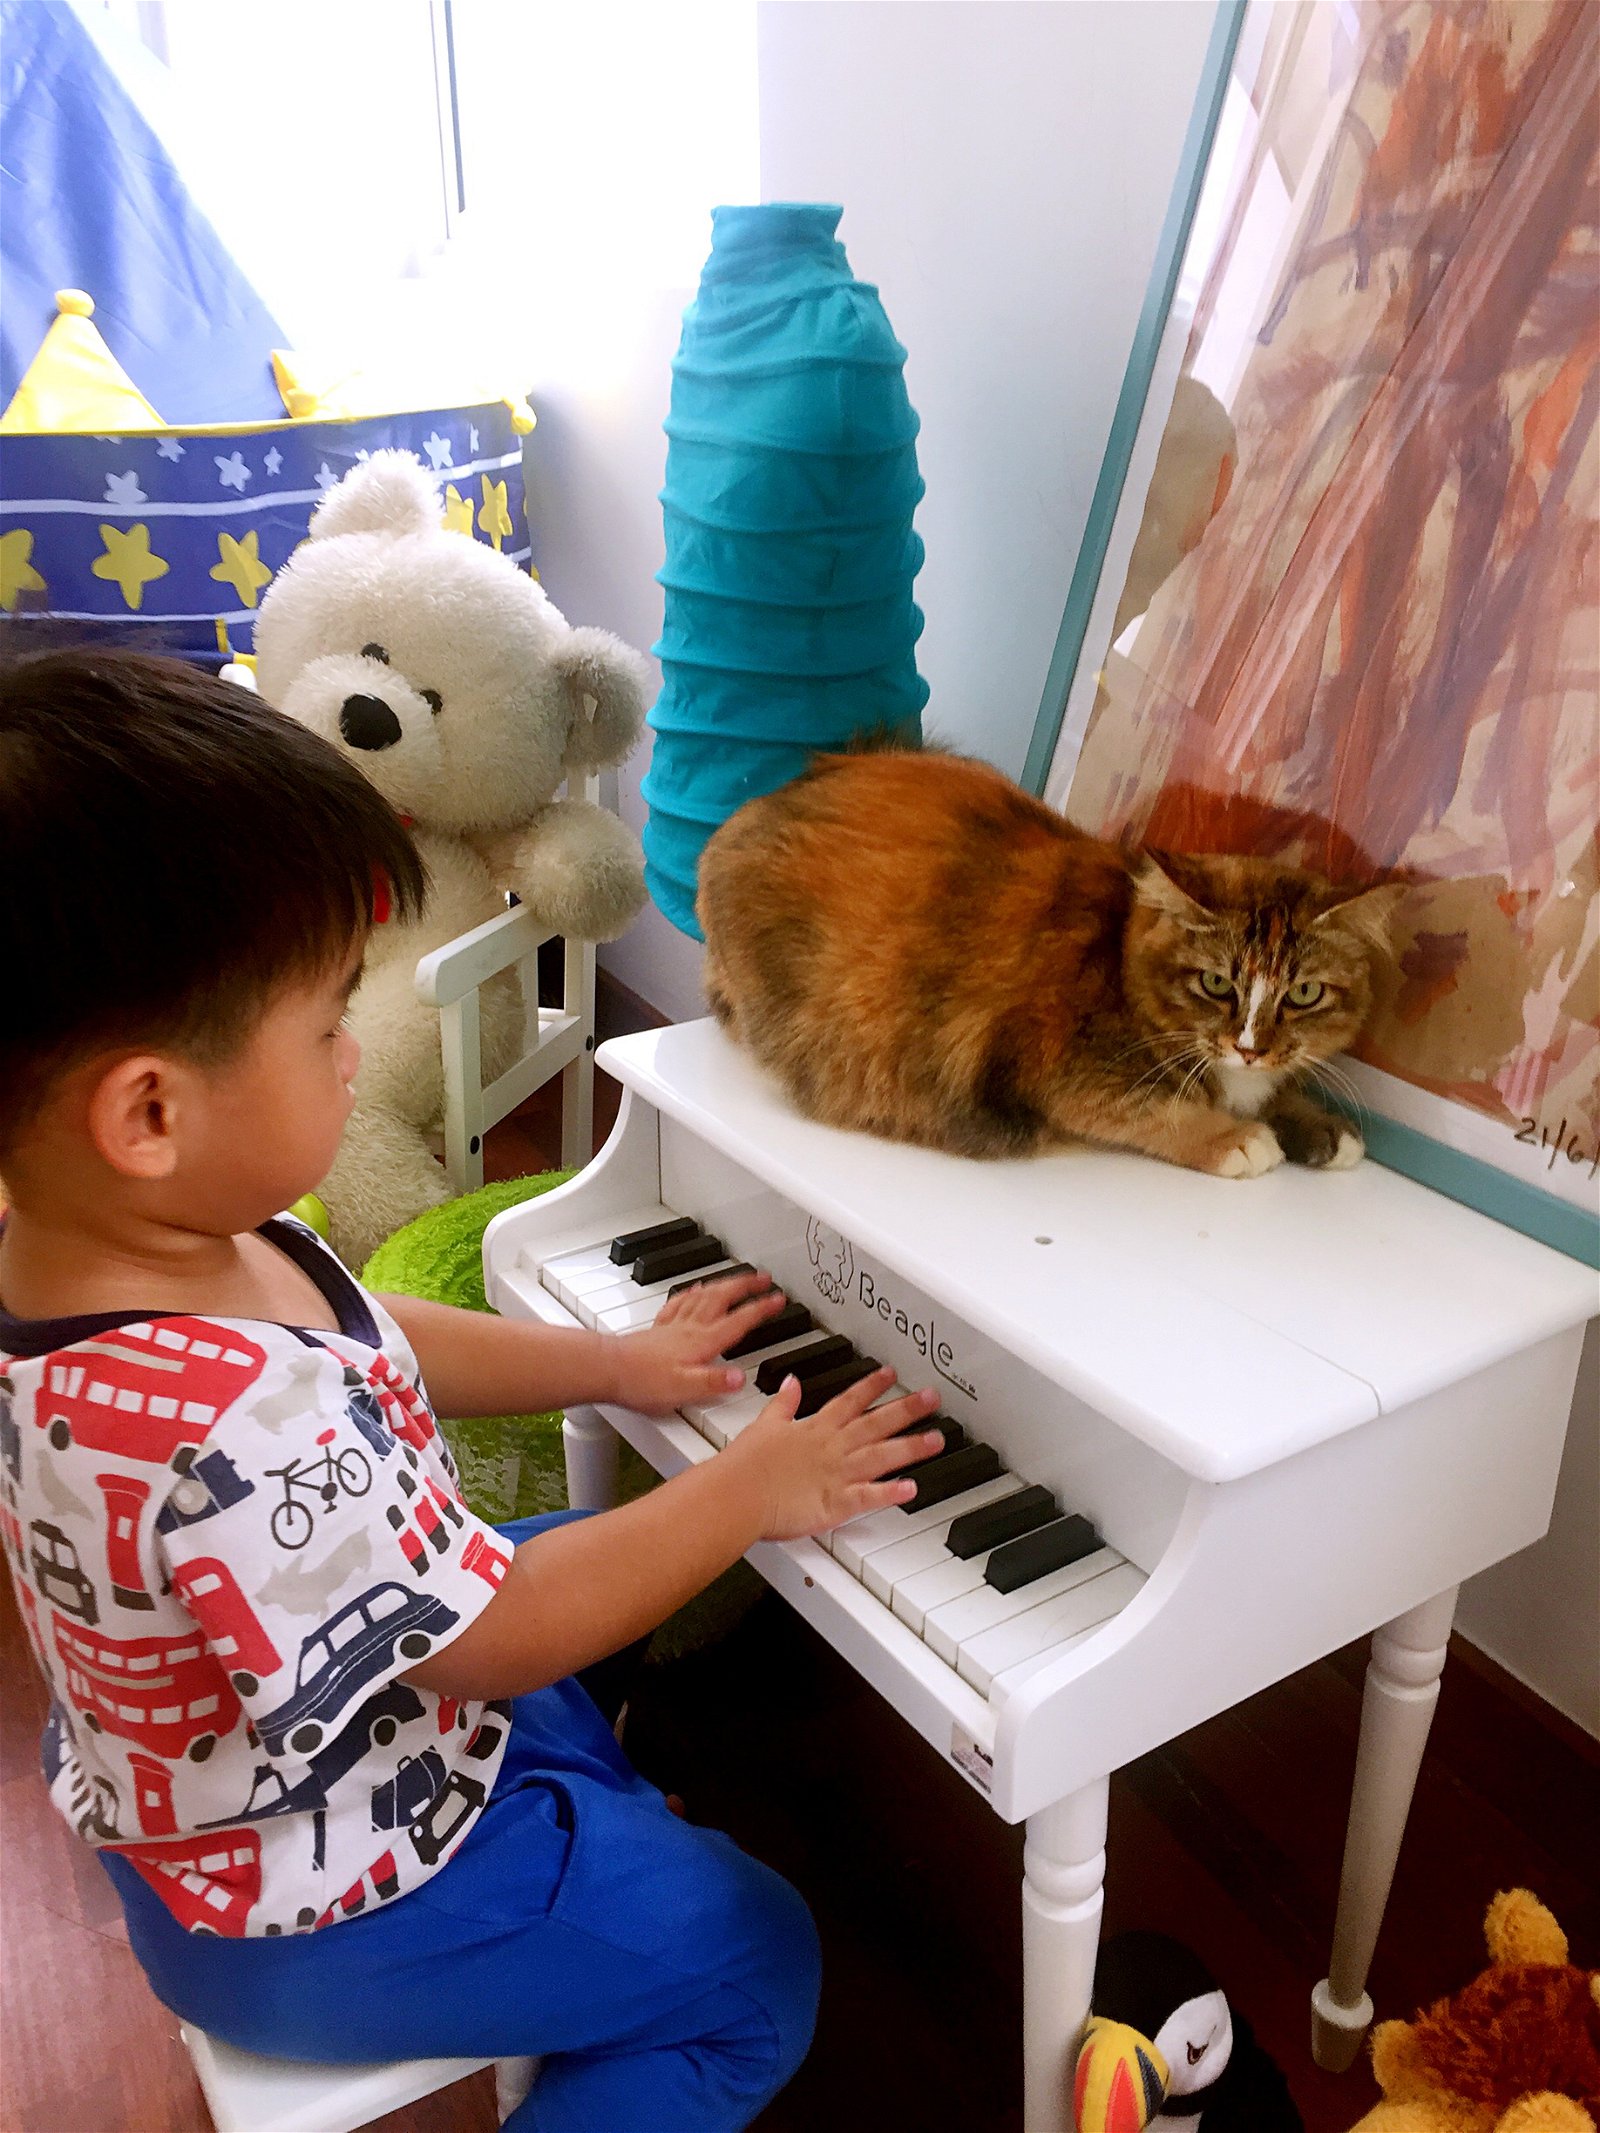 在参与照顾猫咪的过程中，小叶扬逐渐学会自我照顾及社交技巧。图为肥猫陪伴儿子弹琴时的温馨合影。